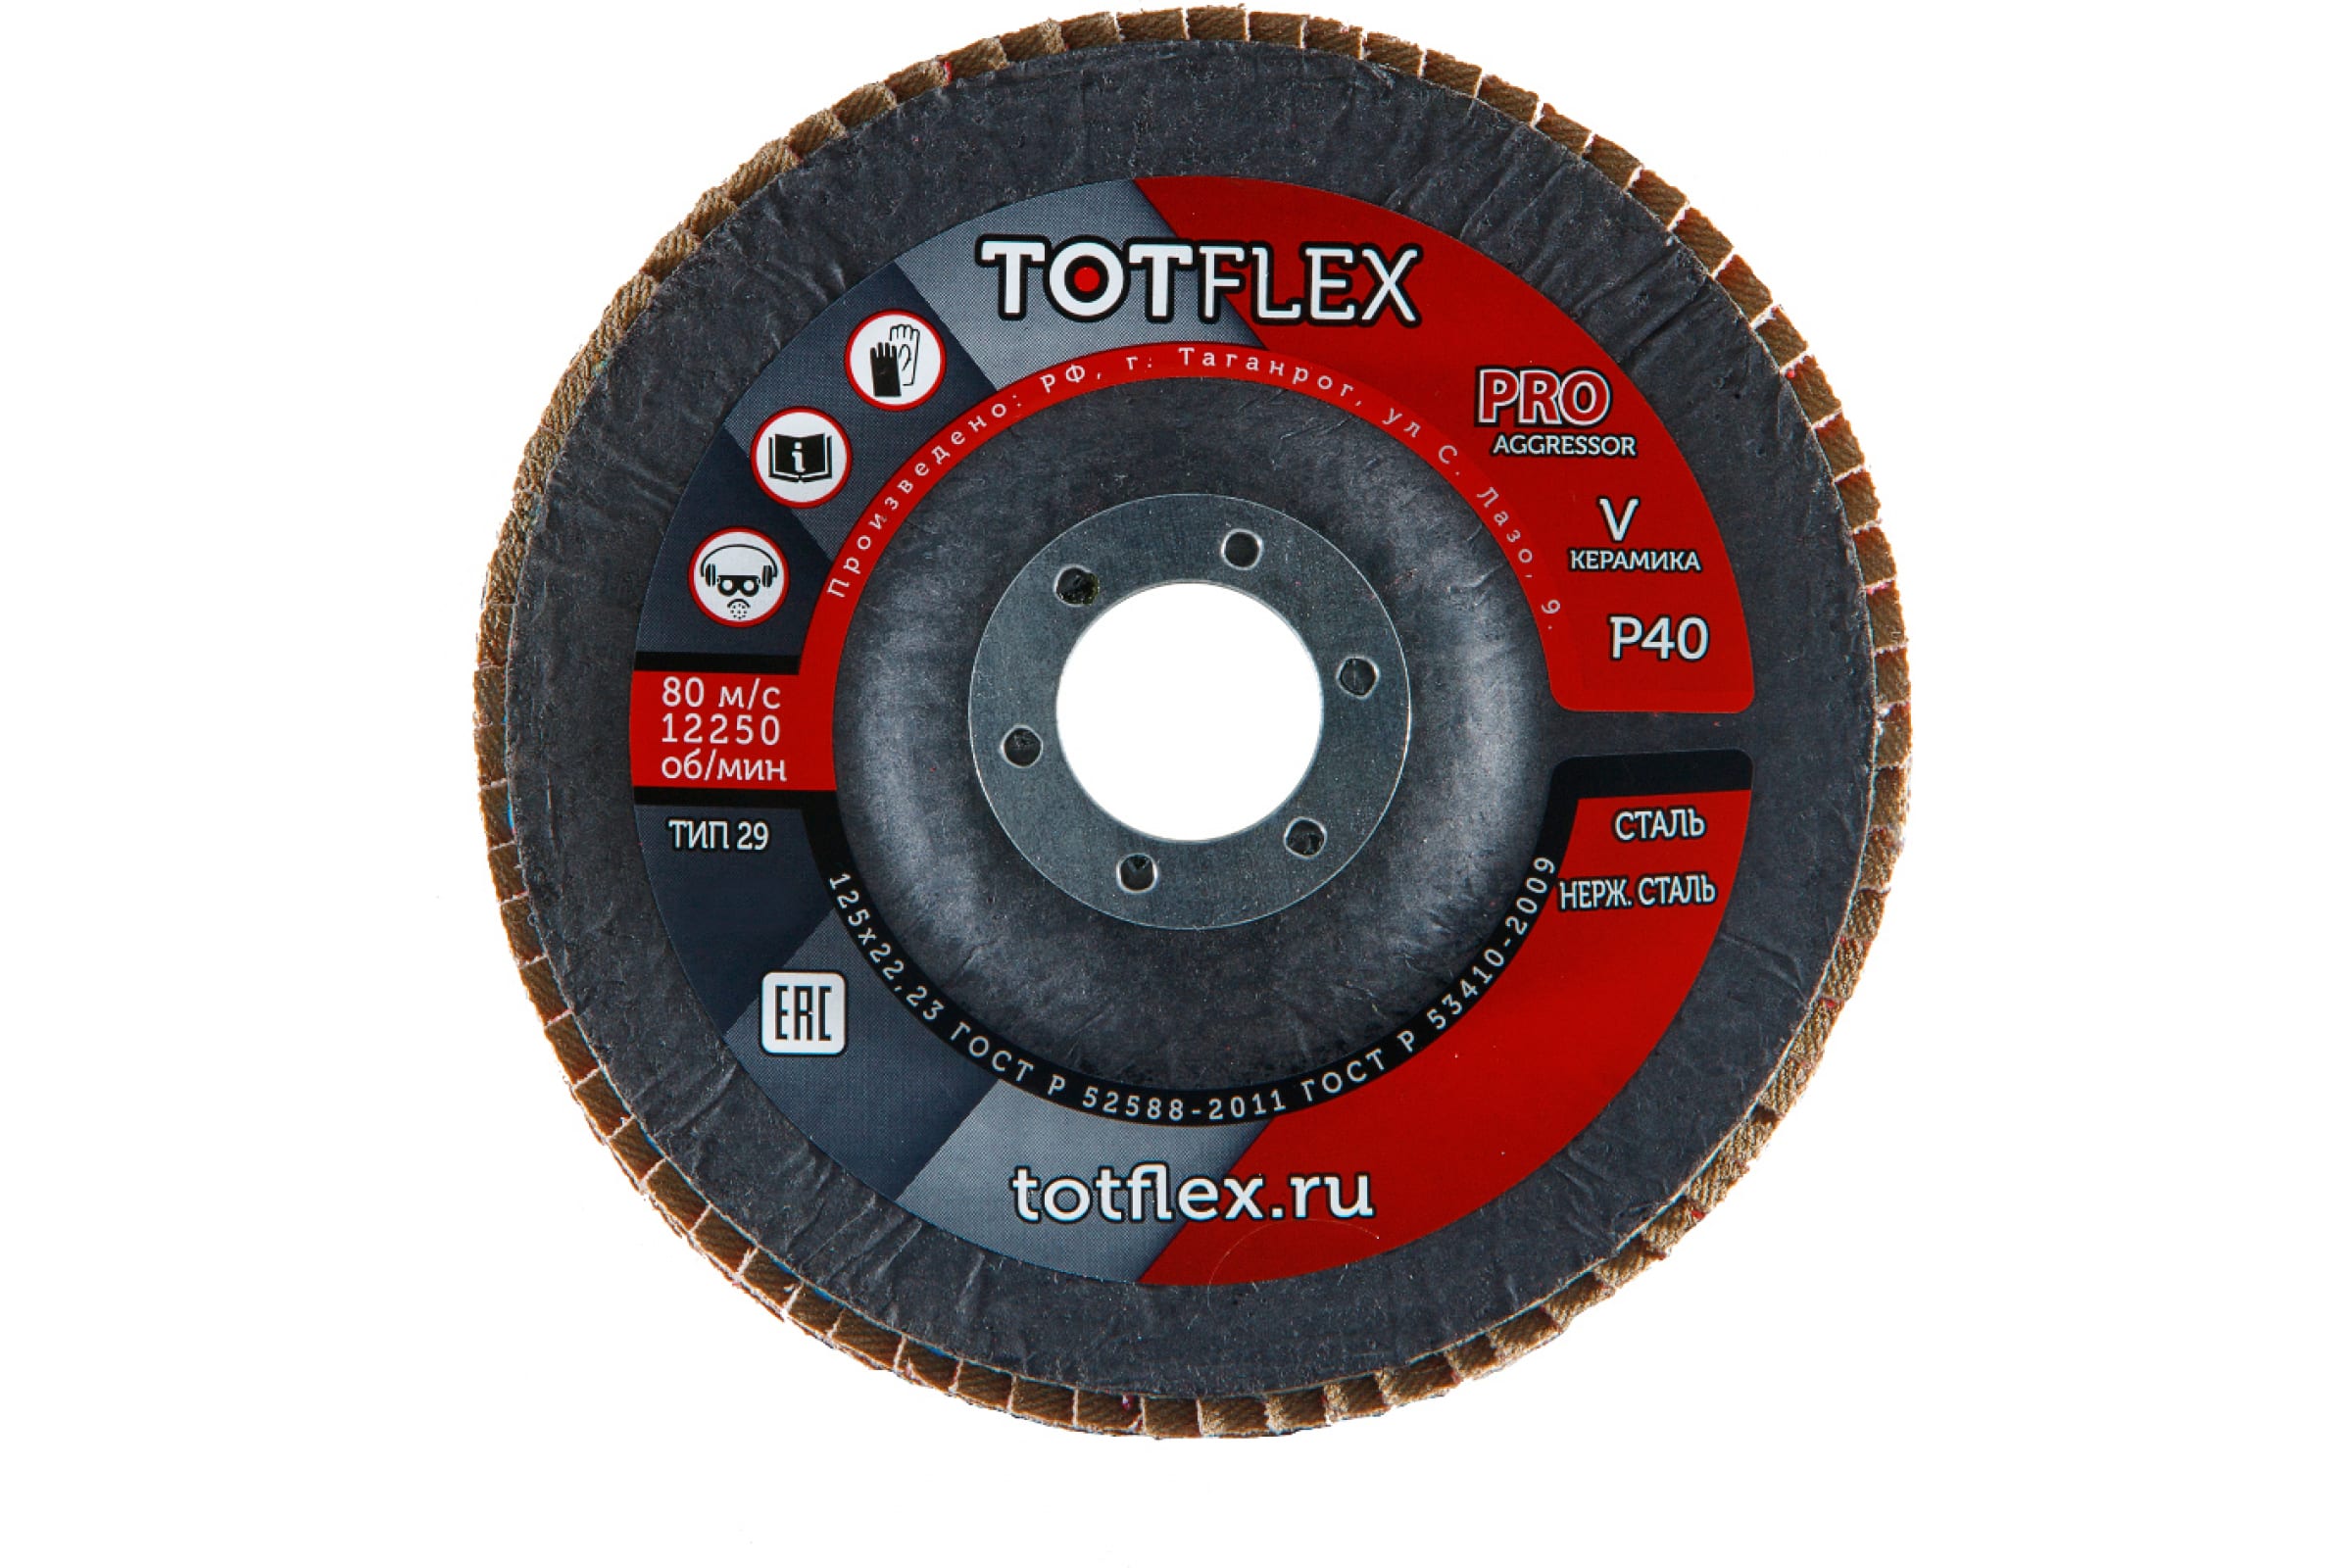 Totflex Круг лепестковый торцевой AGGRESSOR-PRO 2 125x22 V P40 4631148128248 лепесковый торцевой круг практика